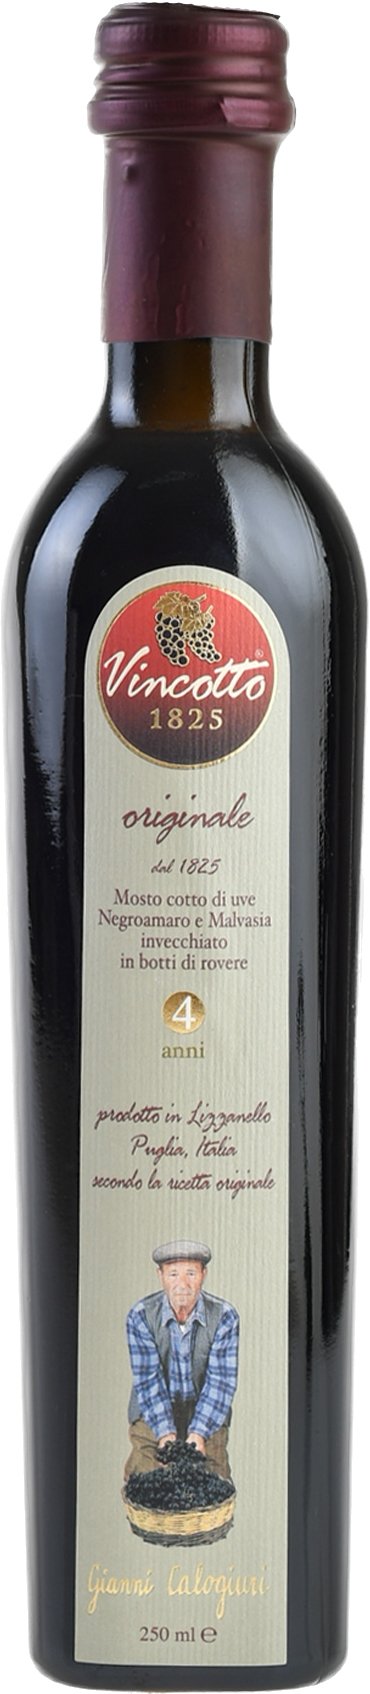 Vincotto Originale 0,25l Gianni Calogiuri